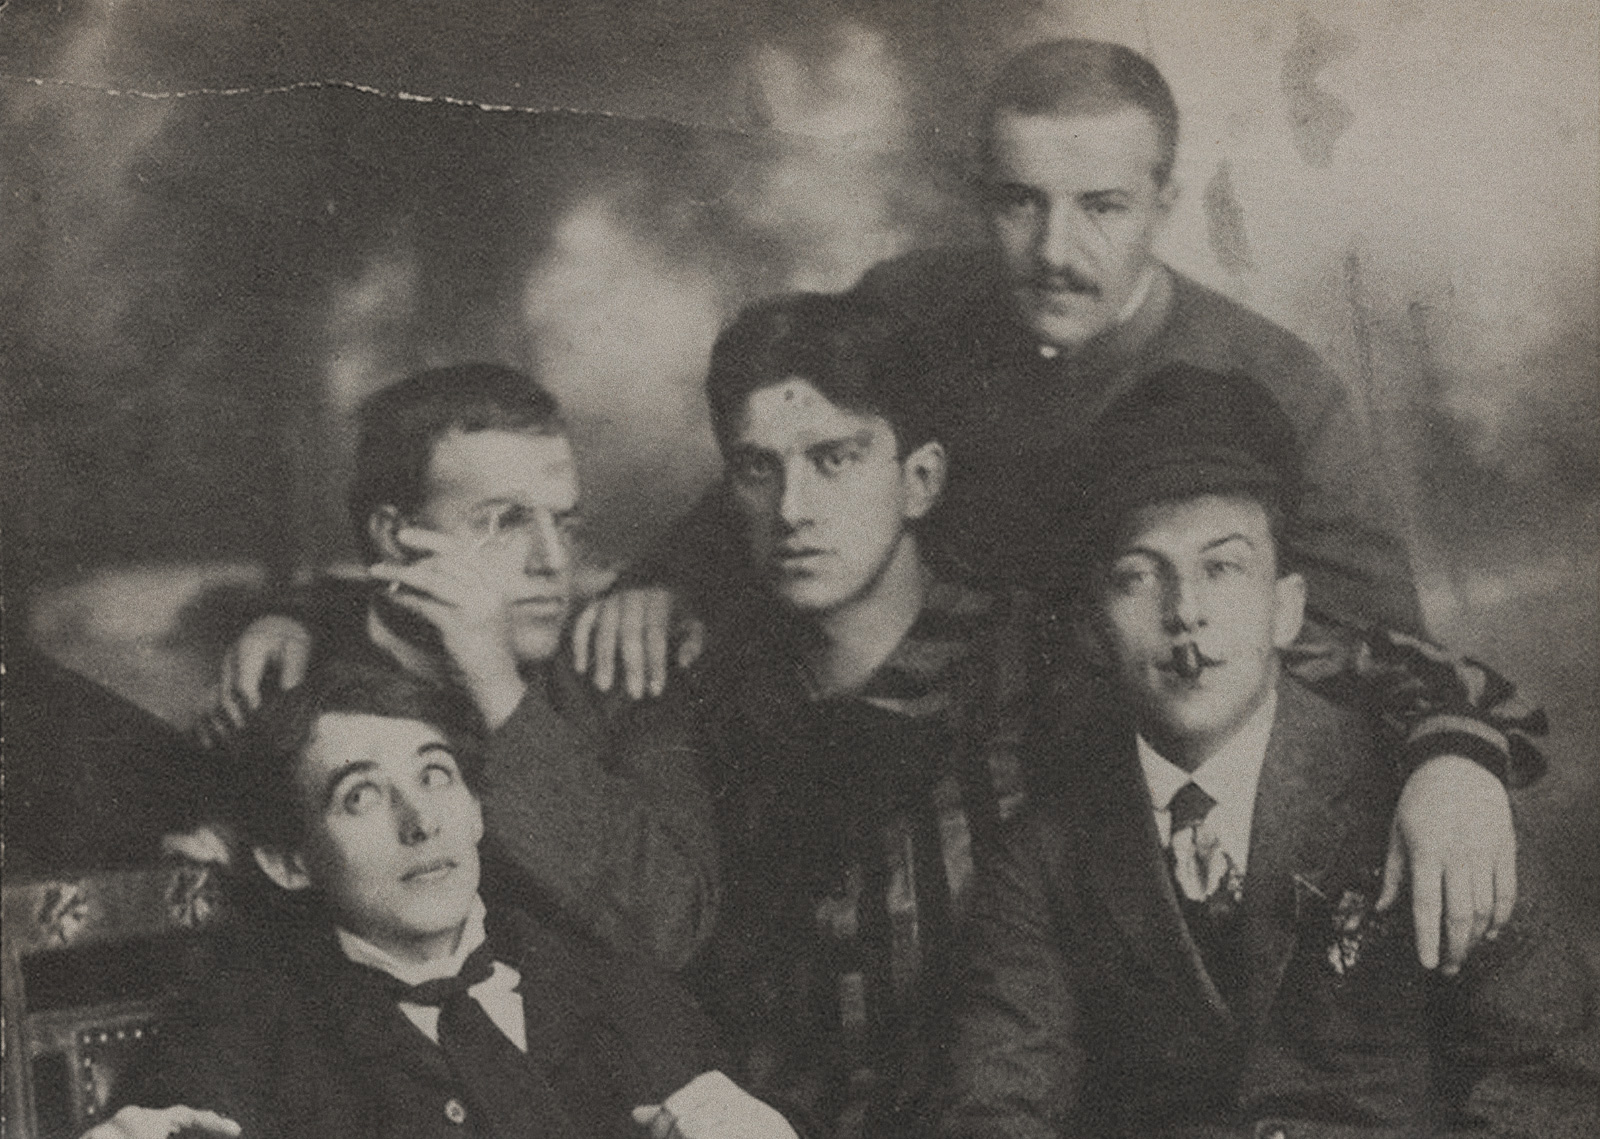 Маяковским в 1912 году вместе с д. Бурлюком, а. Крученых и в. Хлебниковым